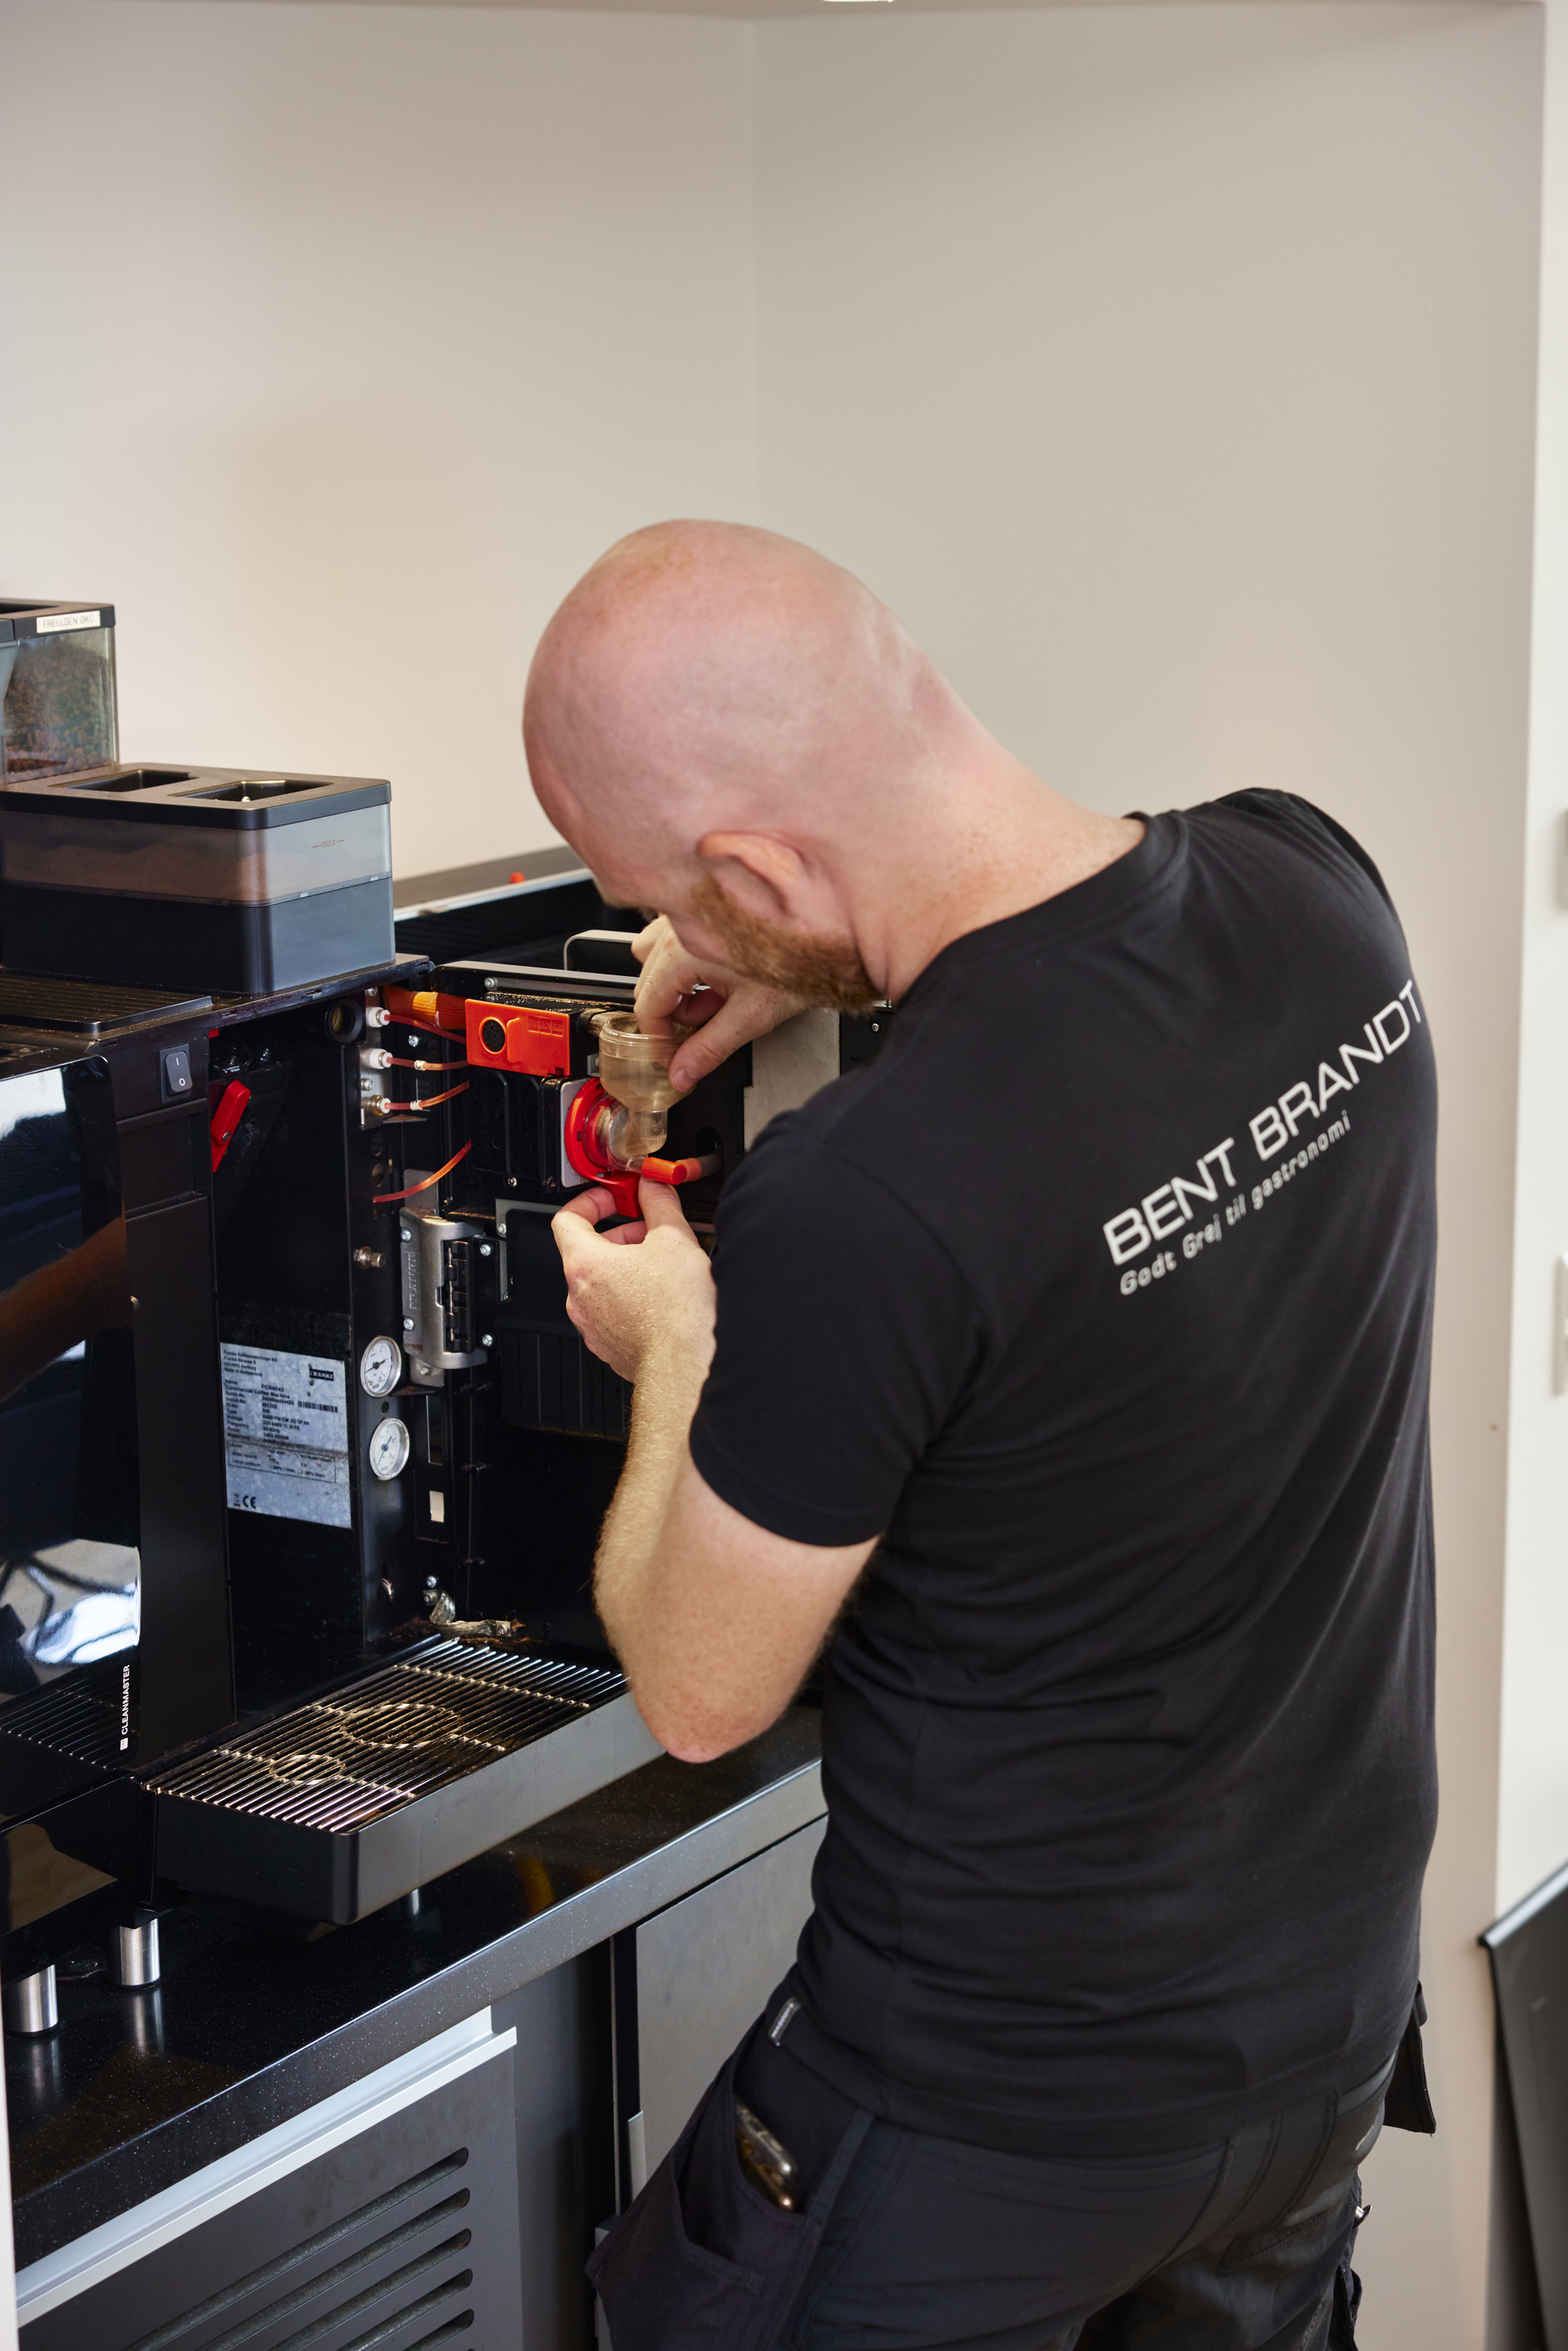 Reparation af FRANKE kaffemaskine af BENT BRANDT servicetekniker